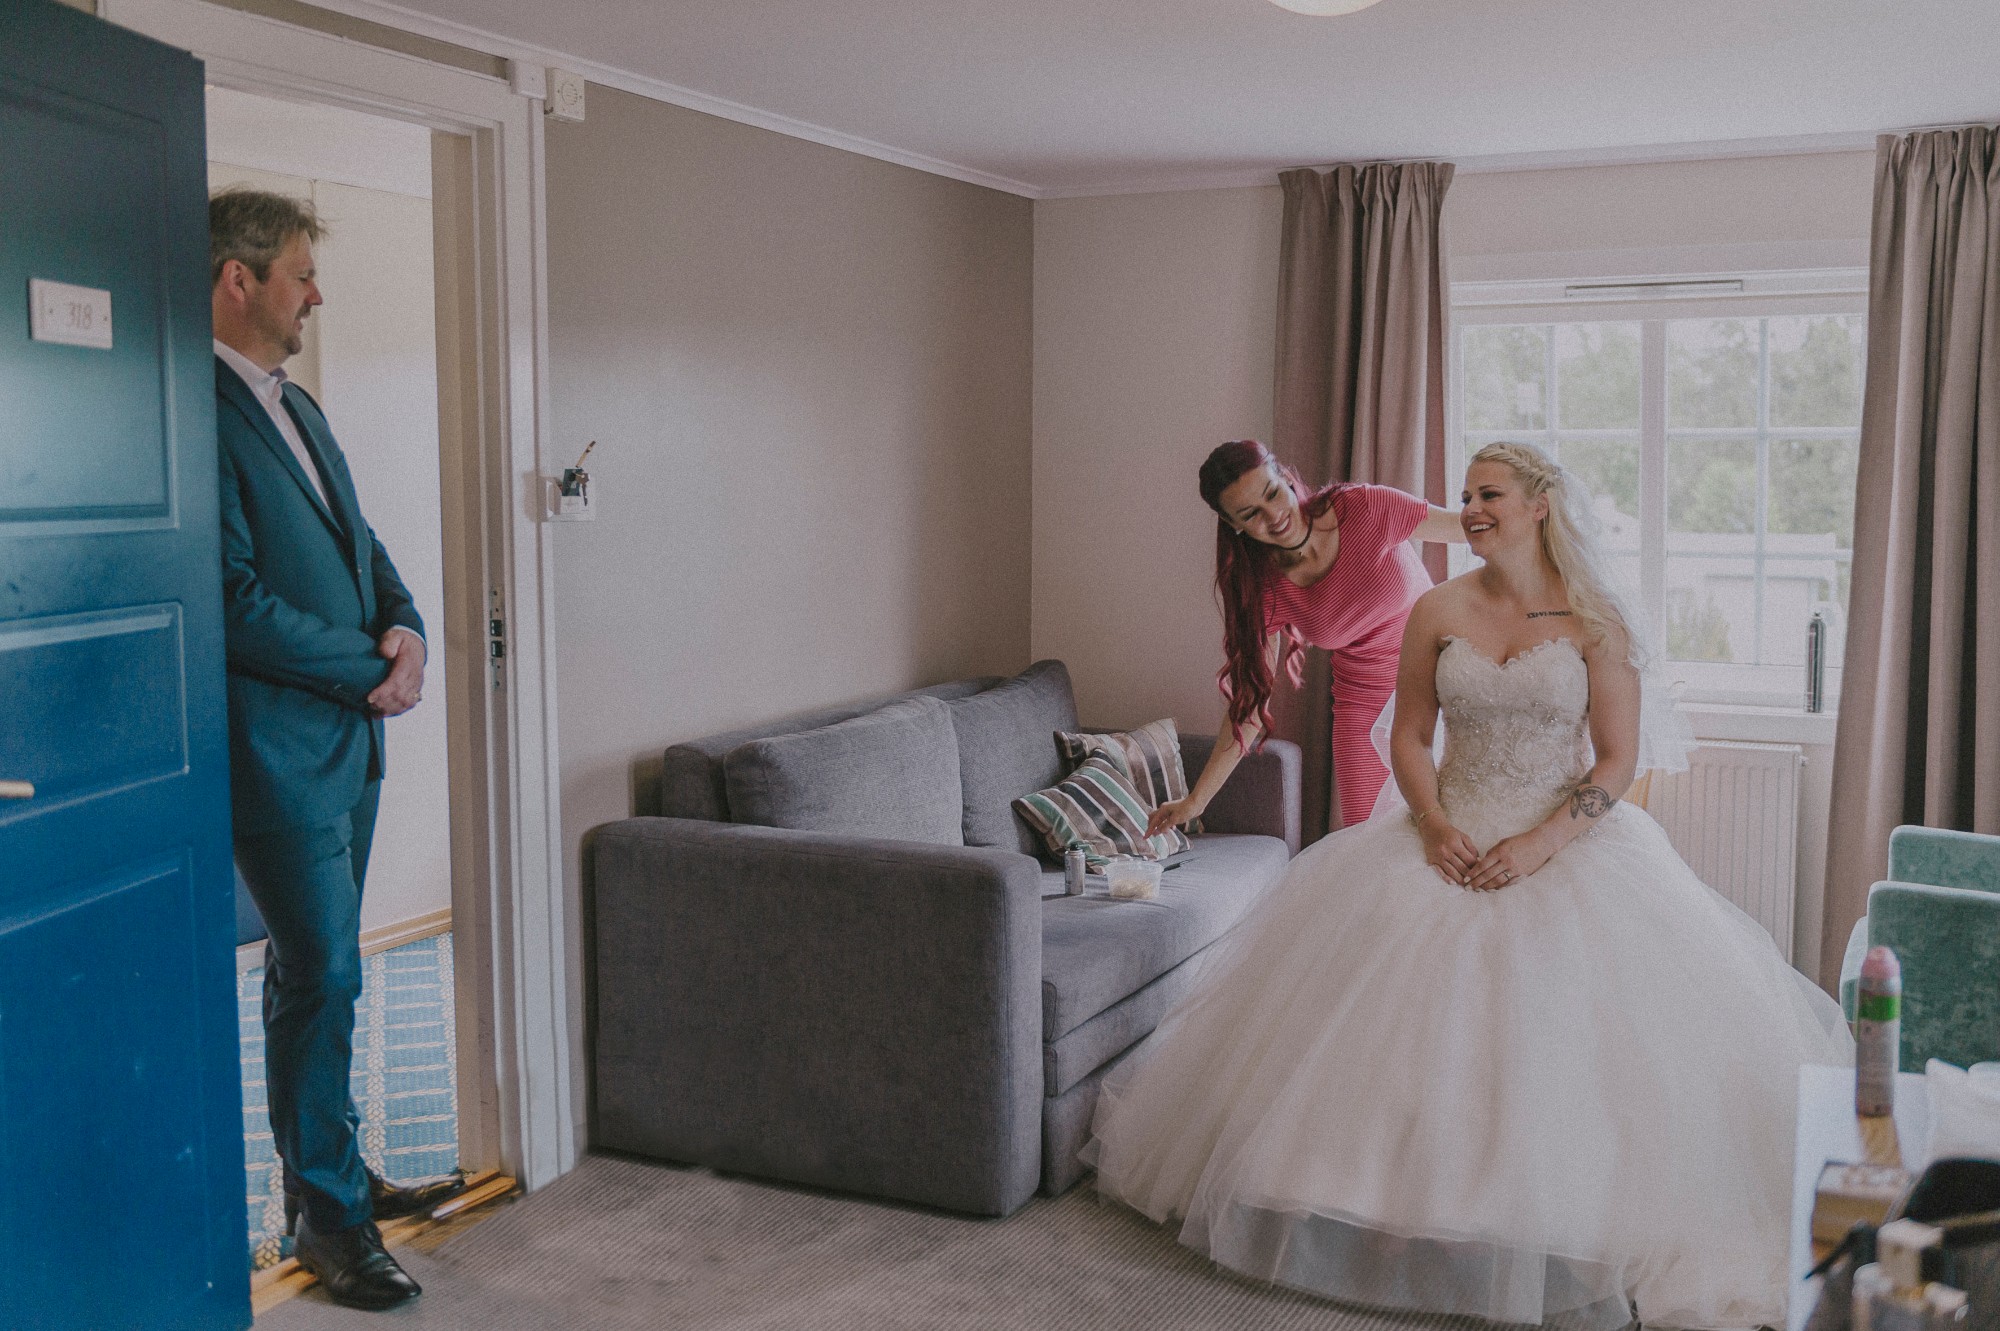 Brud gjør seg klar til bryllup i hotell rom